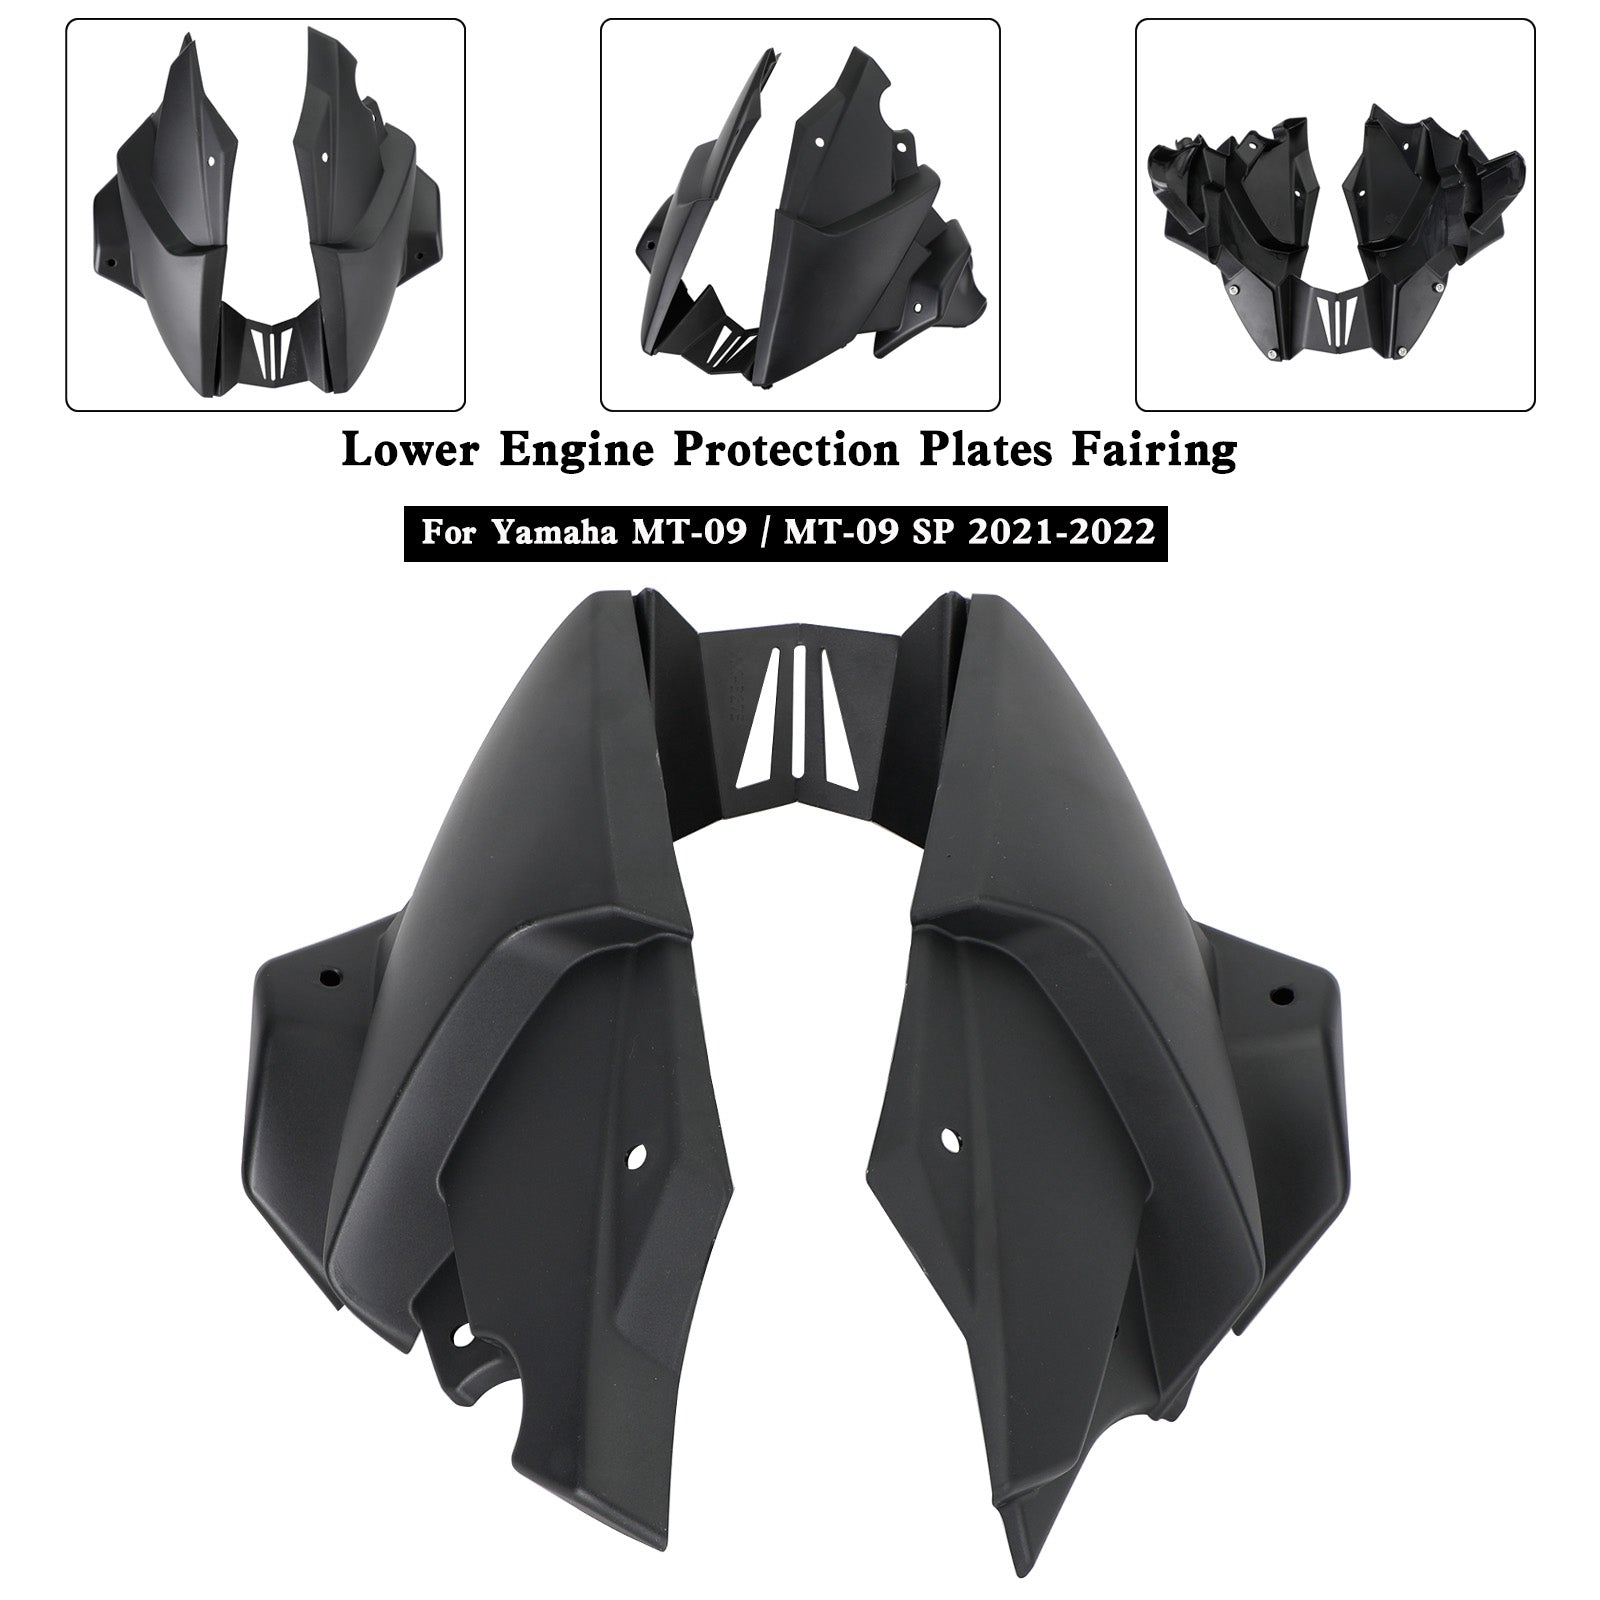 Ermax Belly Pan Untere Motorseitenverkleidung für Yamaha MT-09 / SP 2021-2022